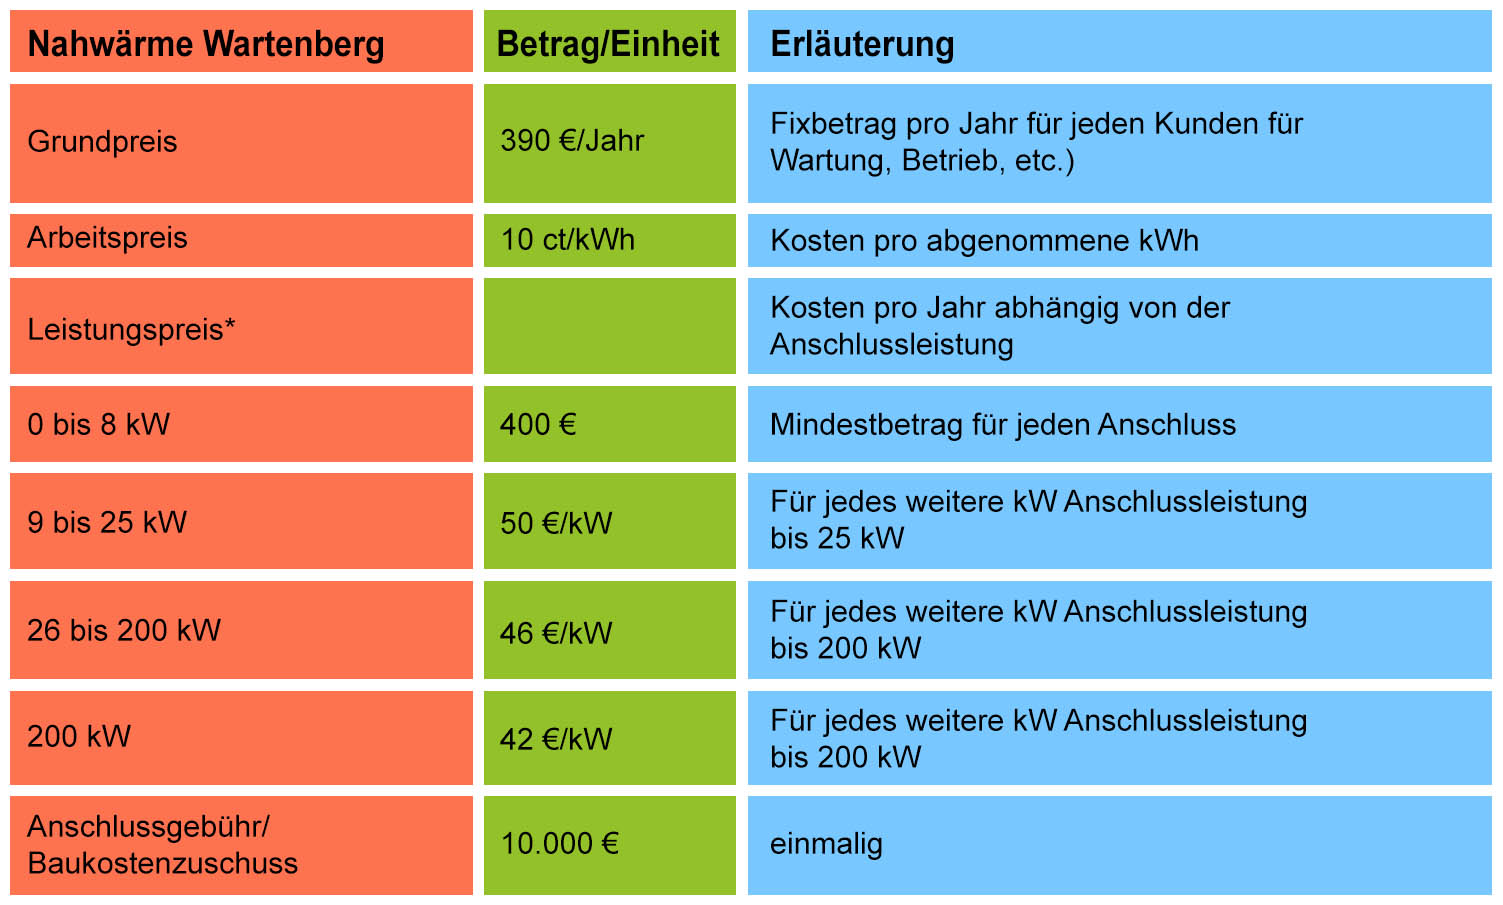 Wärmepreismodelle zur Realisierung eines Anschlusses an die Nahwärme in Wartenberg.